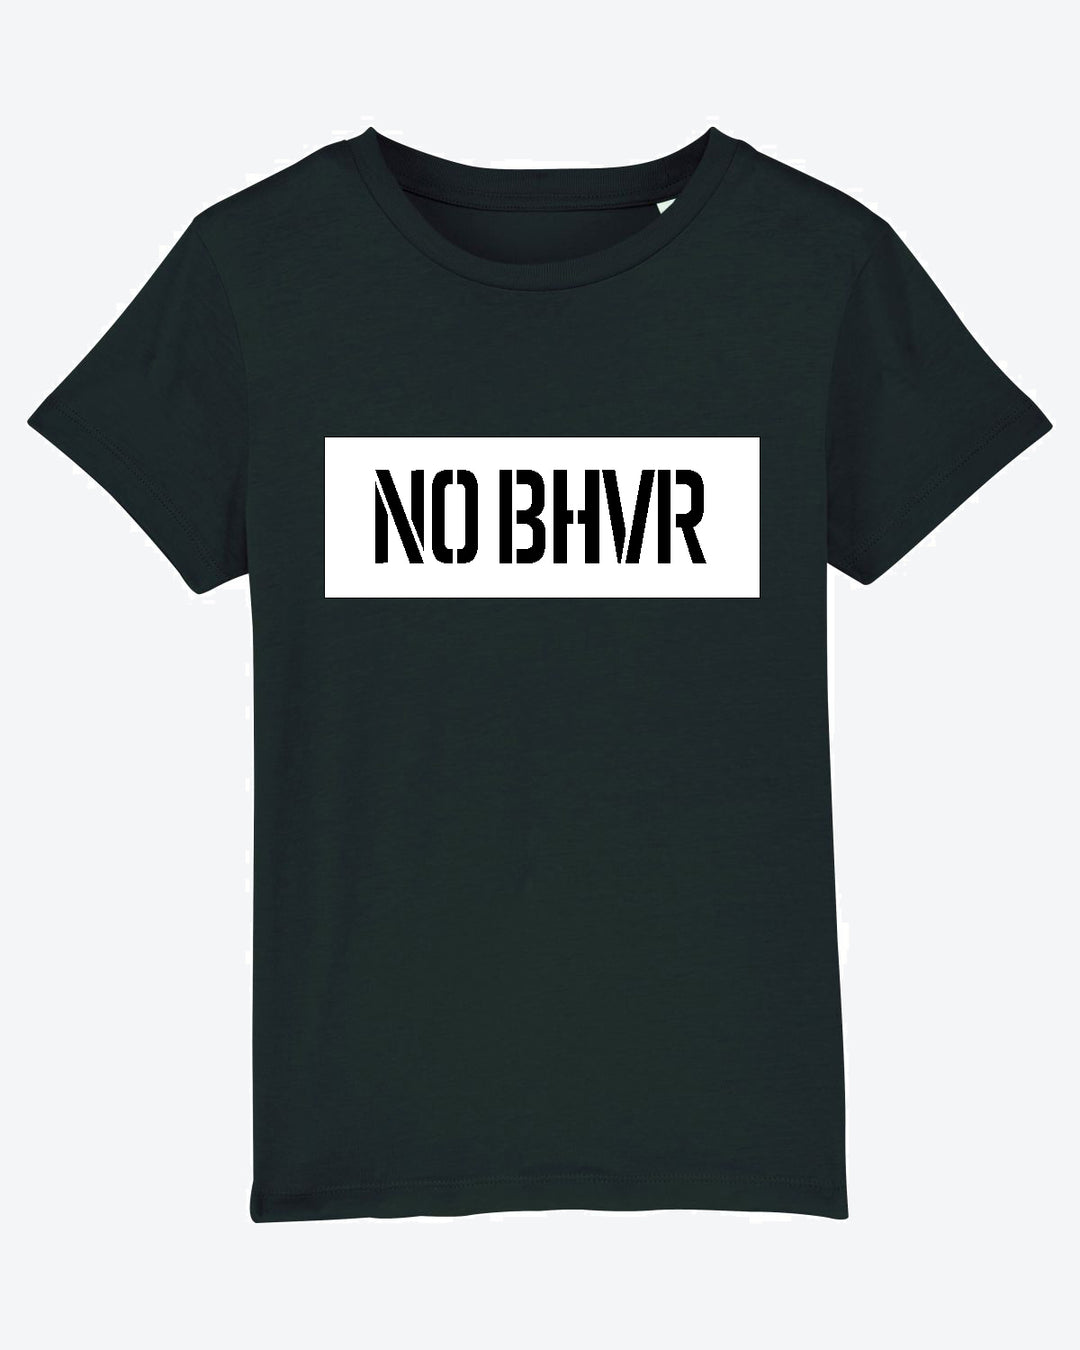 NO BHVR Kids Banner Tee (Black)